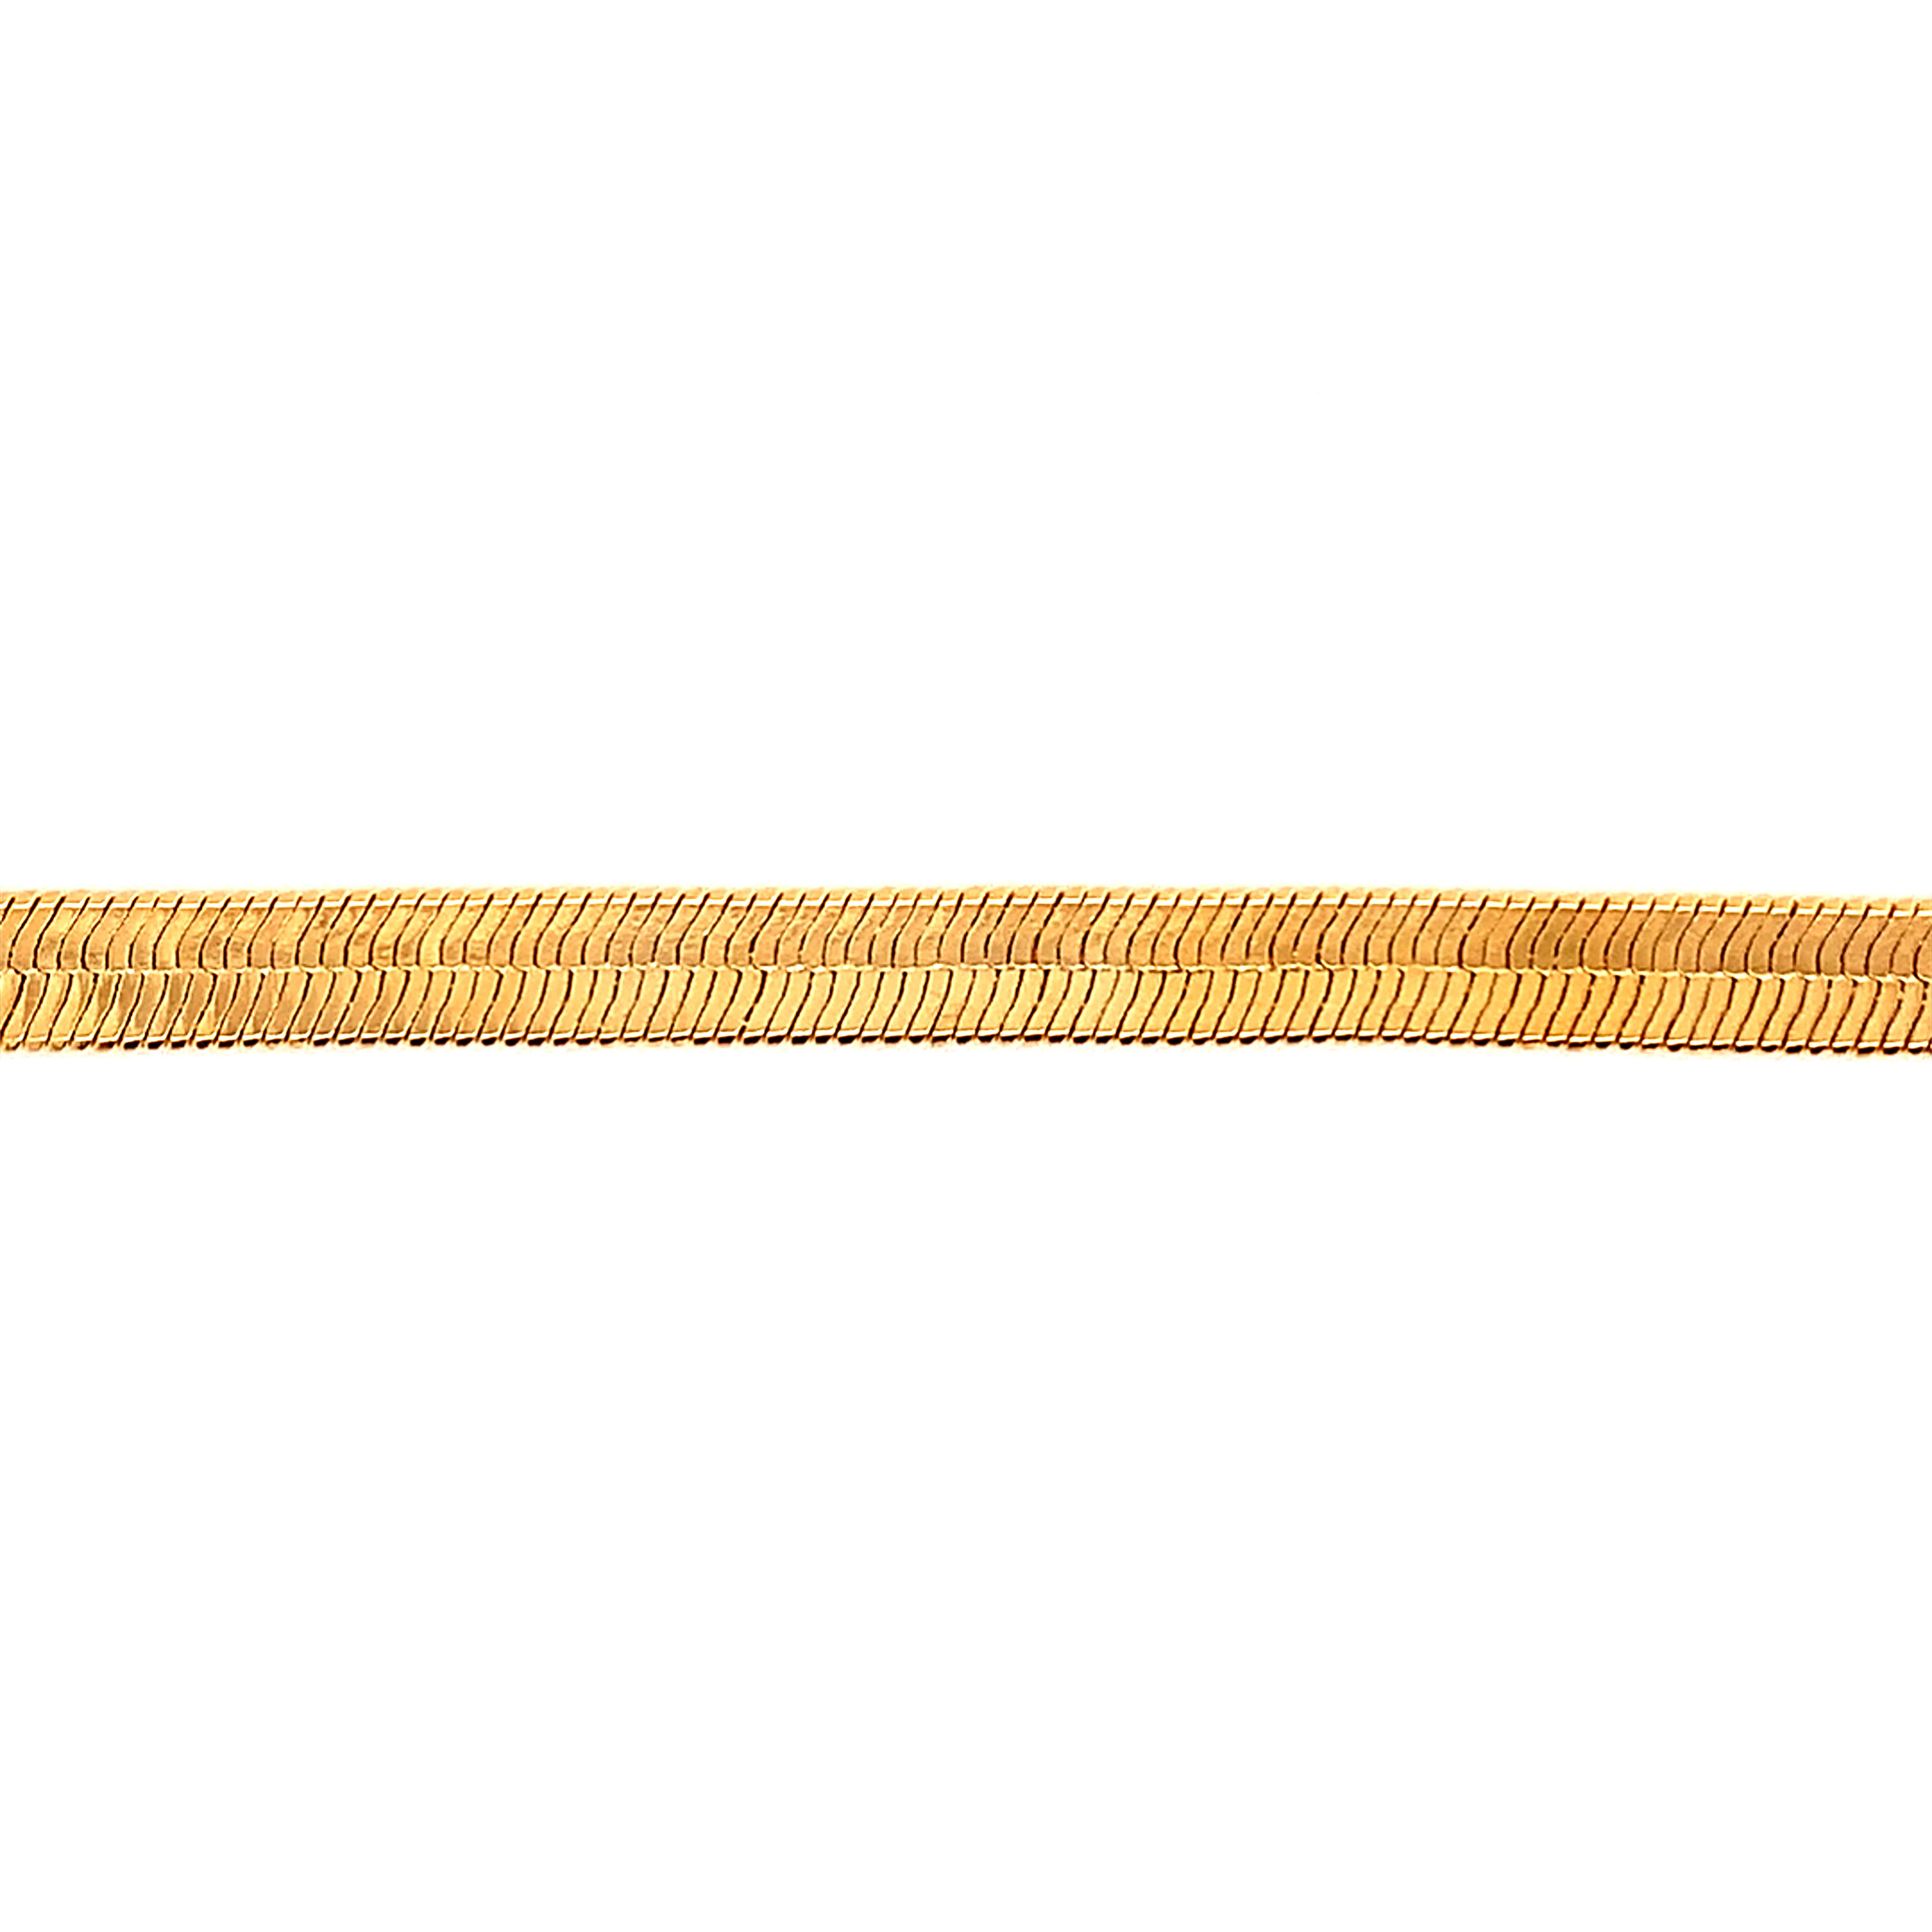 5mm Herringbone Bracelet-7.25"- Gold Filled